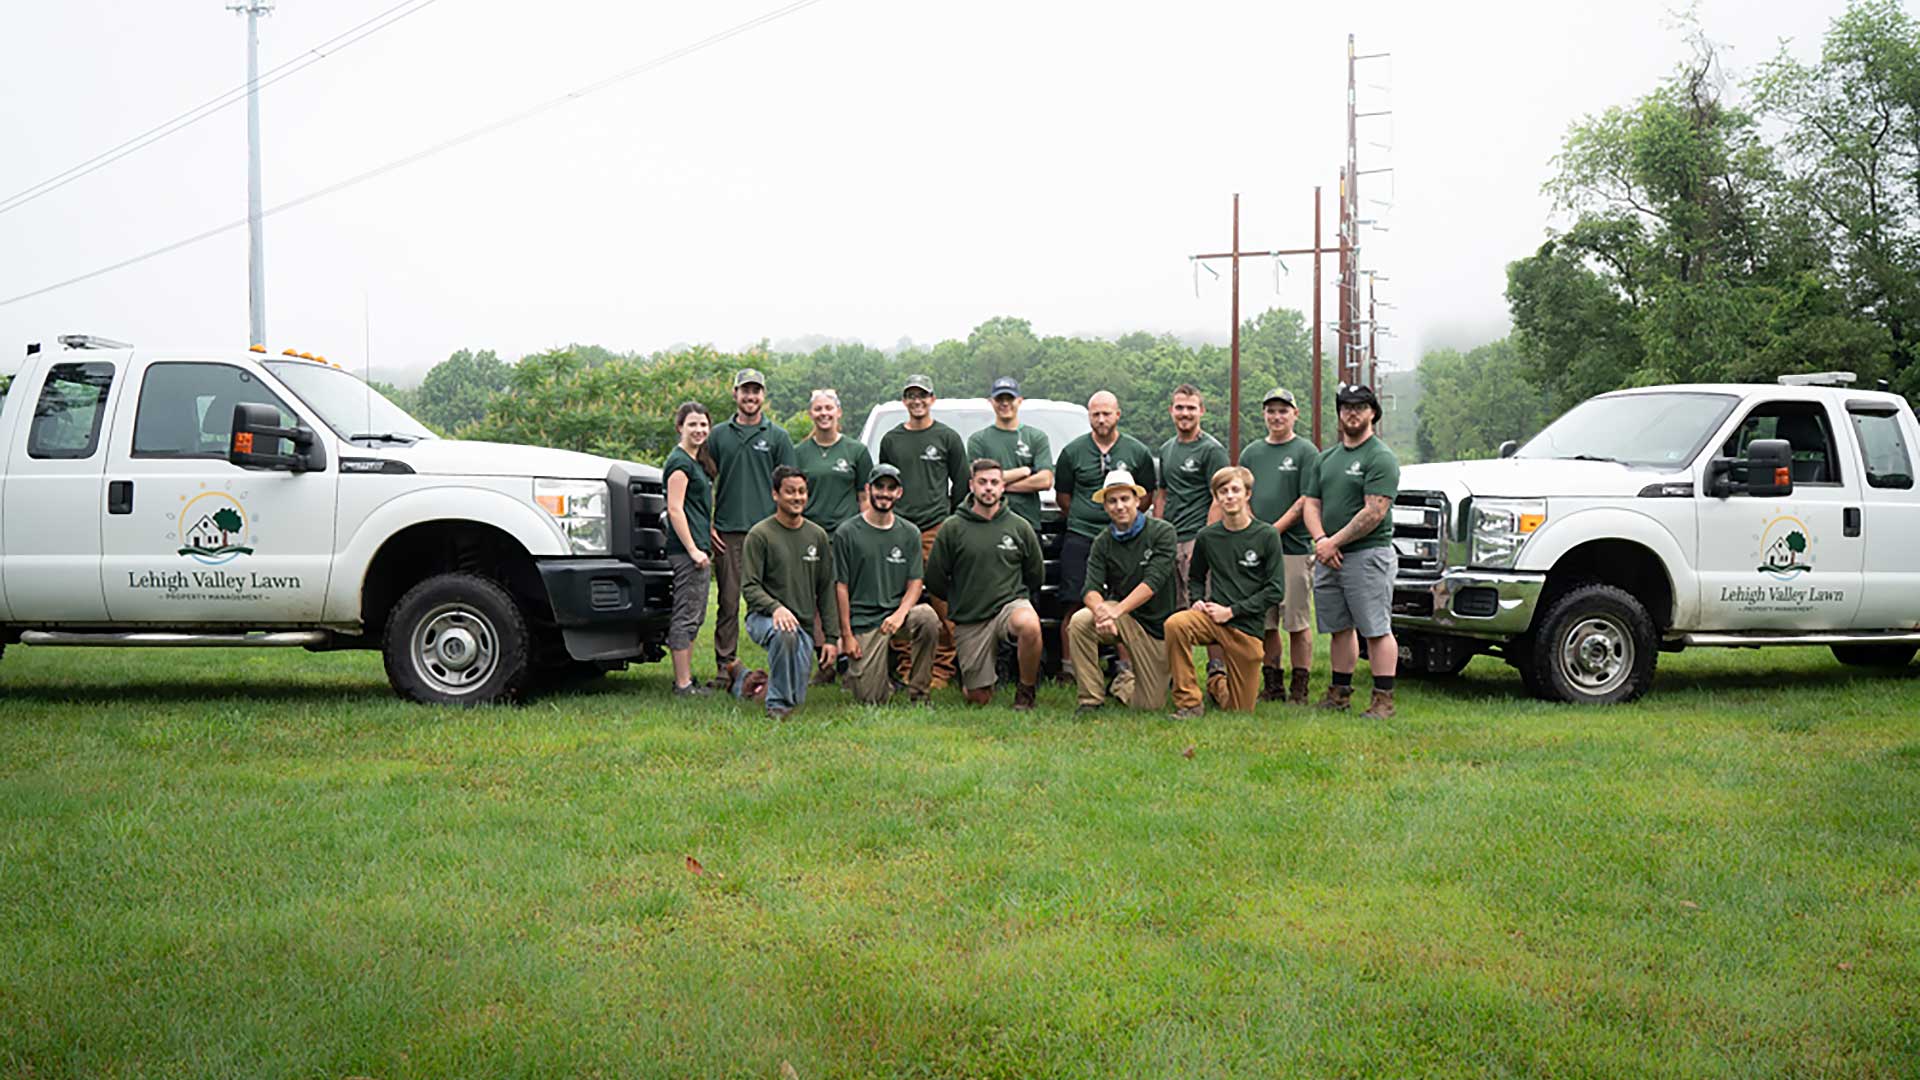 Lehigh Valley Lawn team in Zionsville, Pennsylvania.